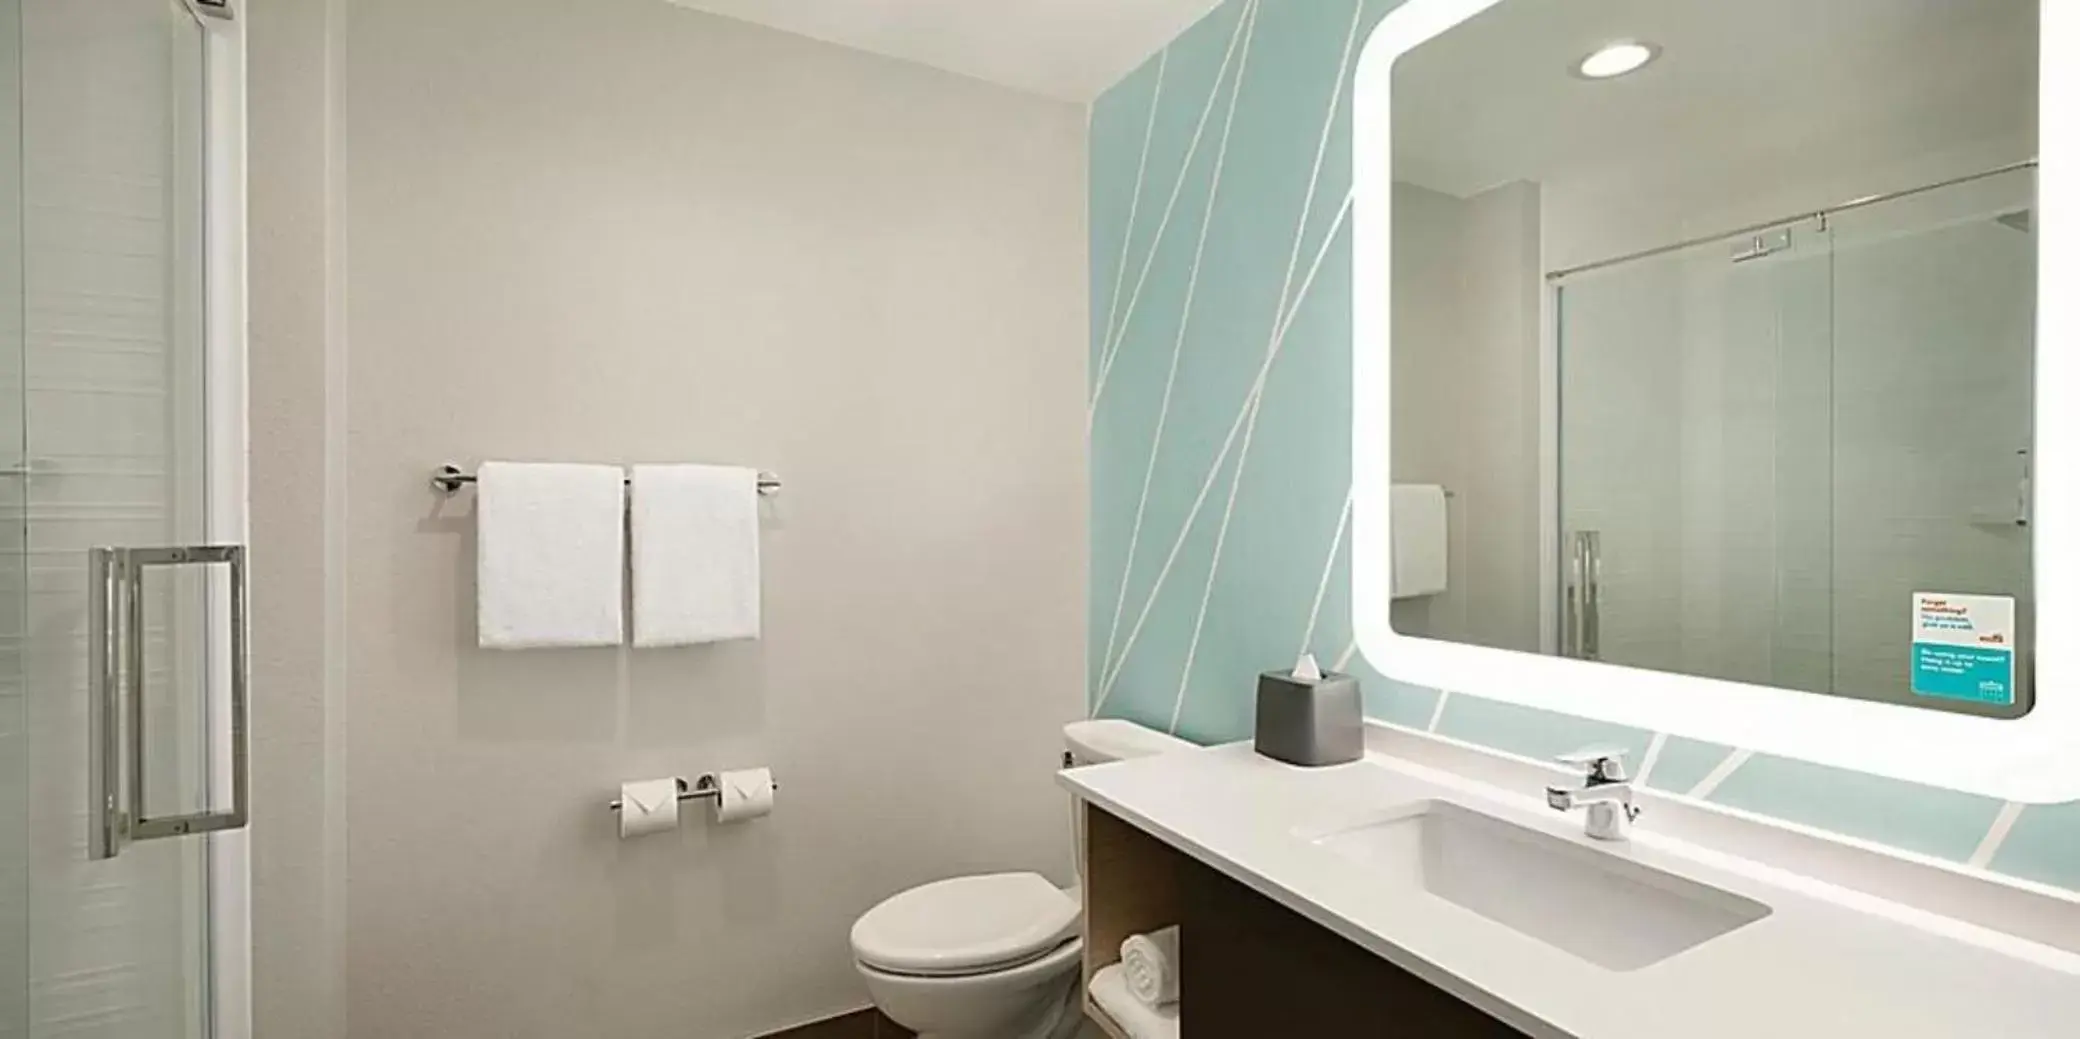 Bathroom in avid hotels - Nashville South - Smyrna, an IHG Hotel